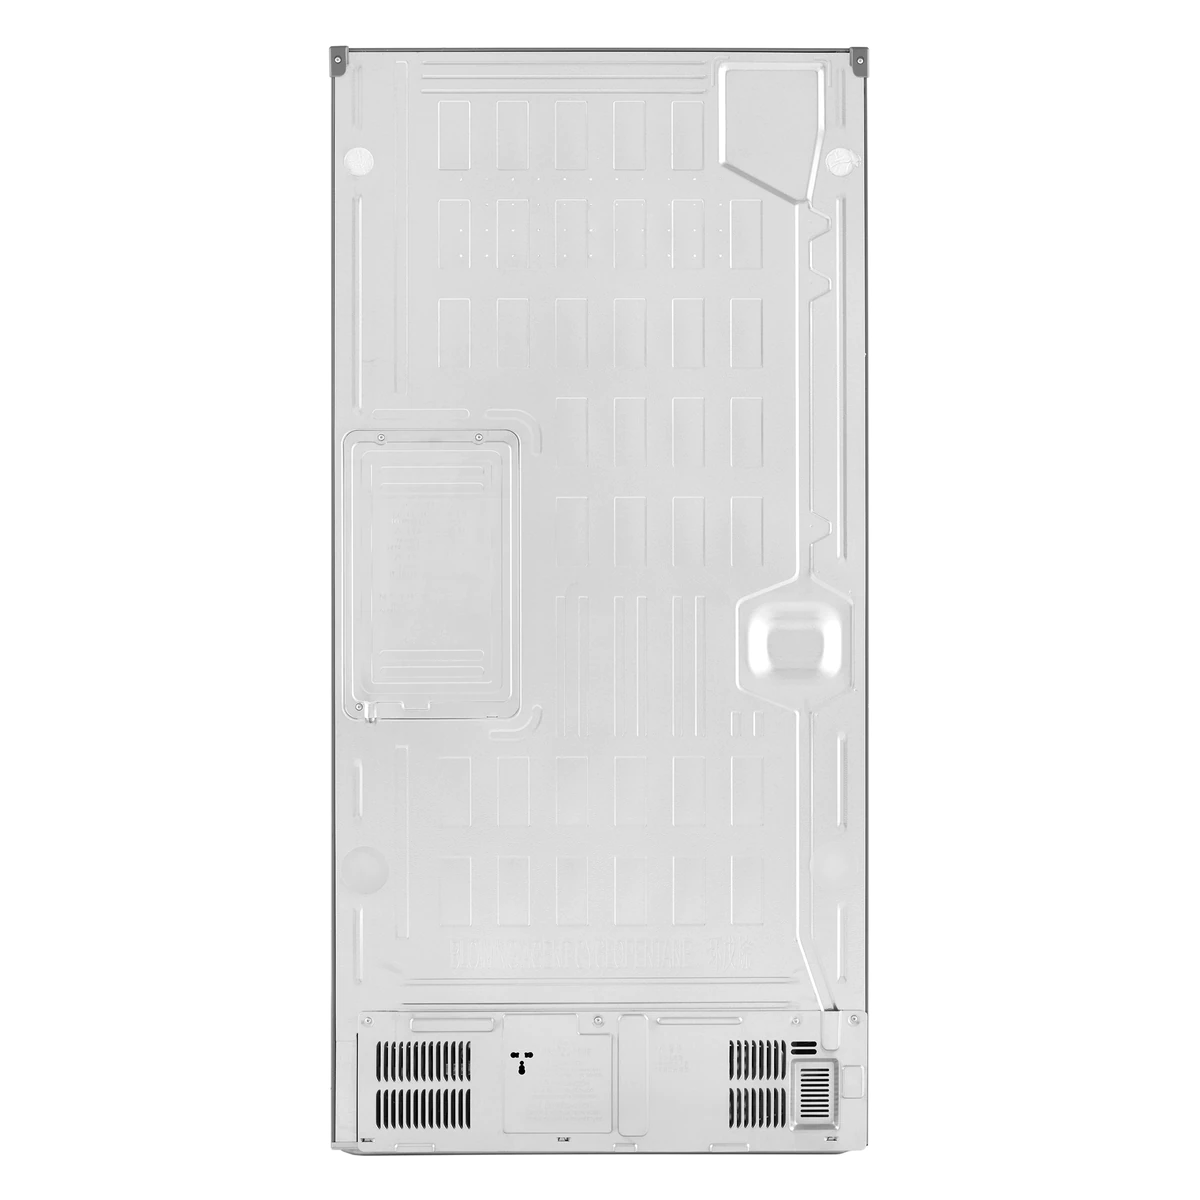 LG F522S11 side-by-side fridge 464L 對門式雪櫃